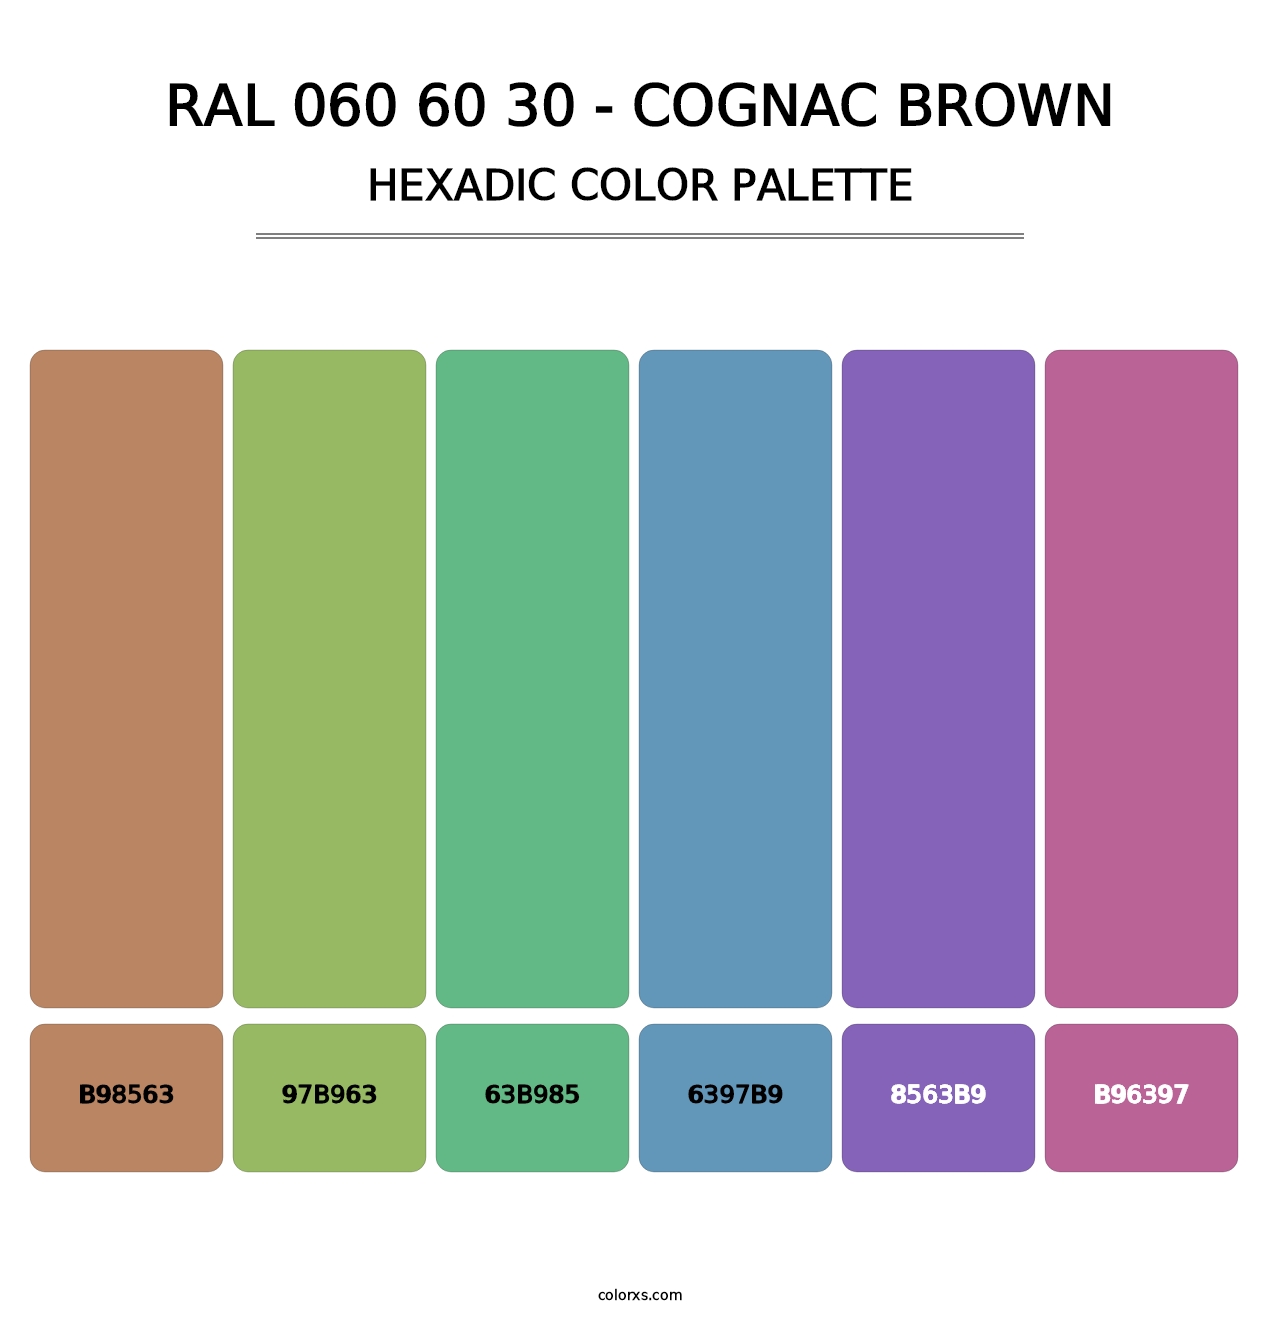 RAL 060 60 30 - Cognac Brown - Hexadic Color Palette